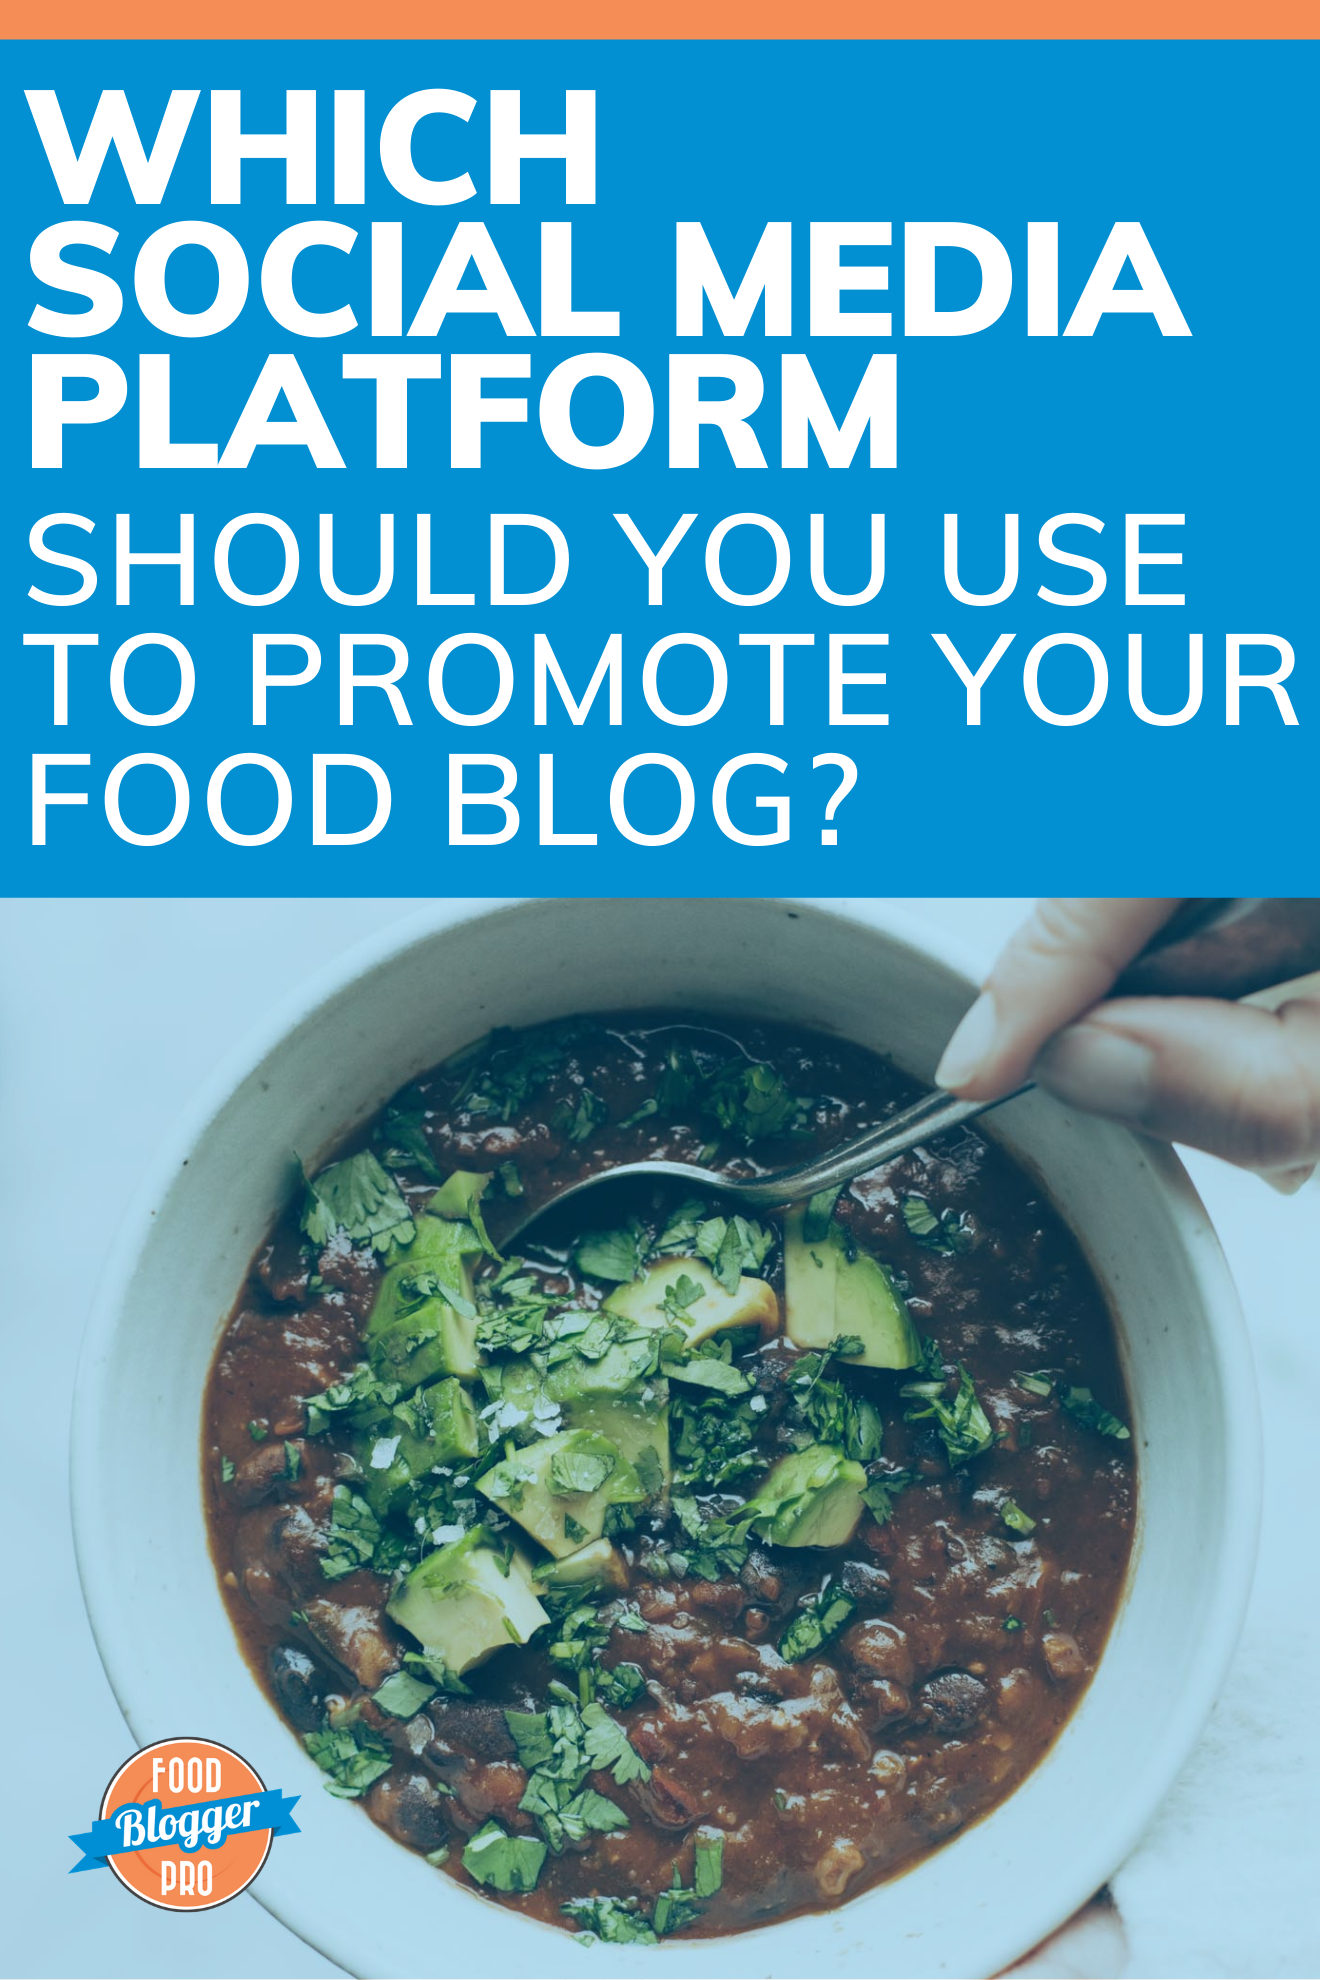 一碗辣椒和文章标题,“你应使用哪个社交媒体平台推广食物博客?